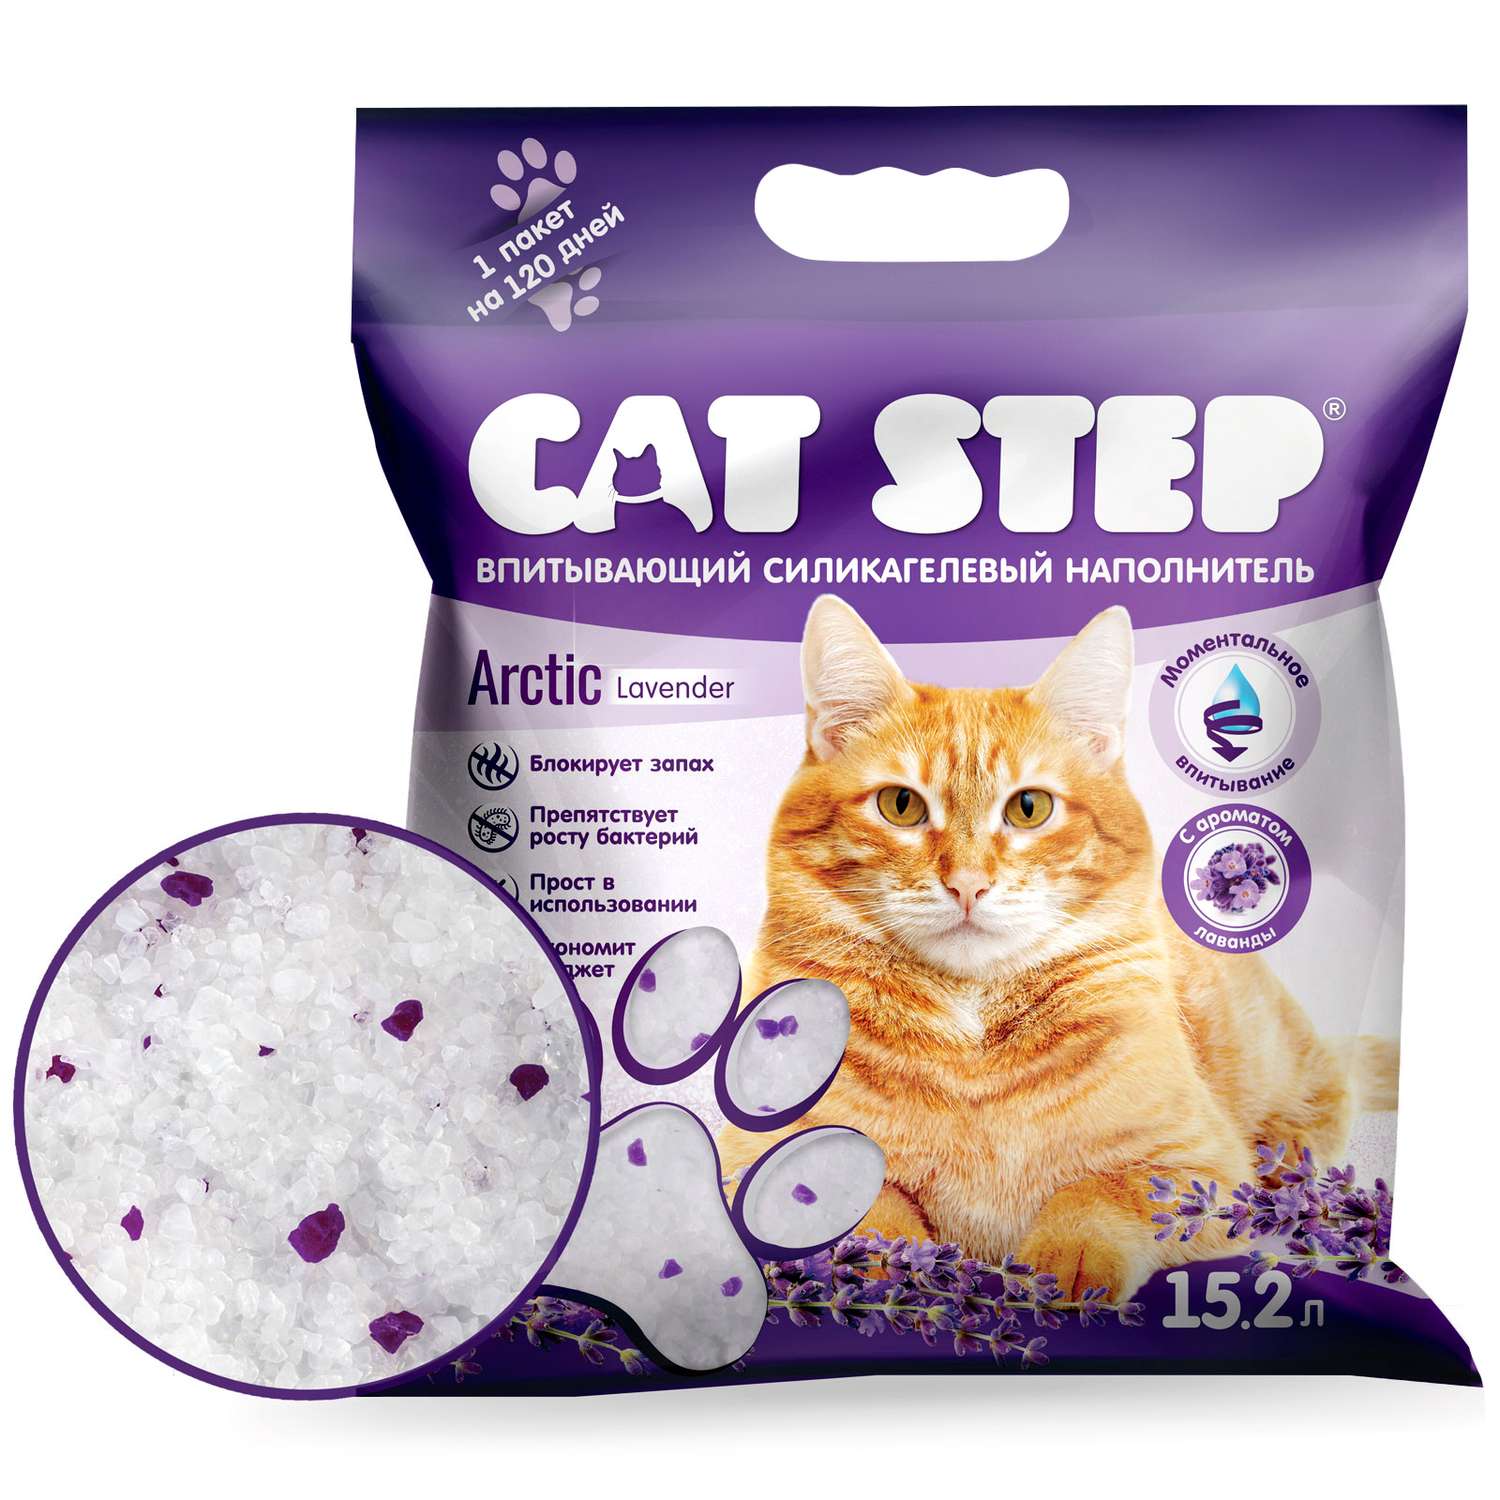 Наполнитель для кошек Cat Step Arctic Lavender впитывающий силикагелевый 15.2л - фото 2